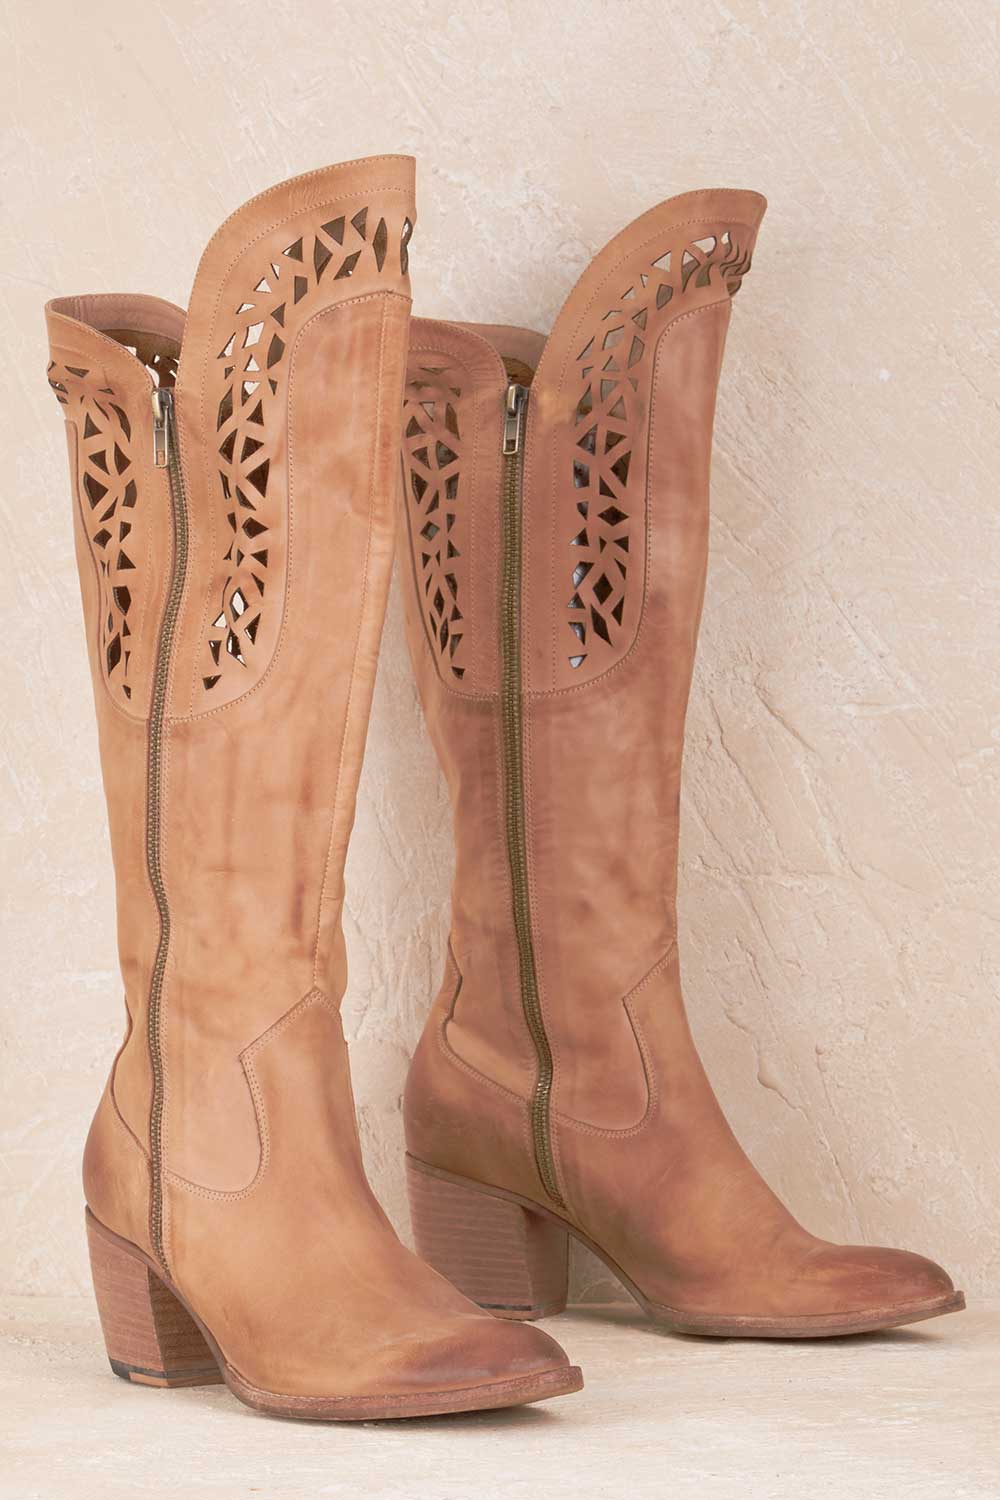 django boots